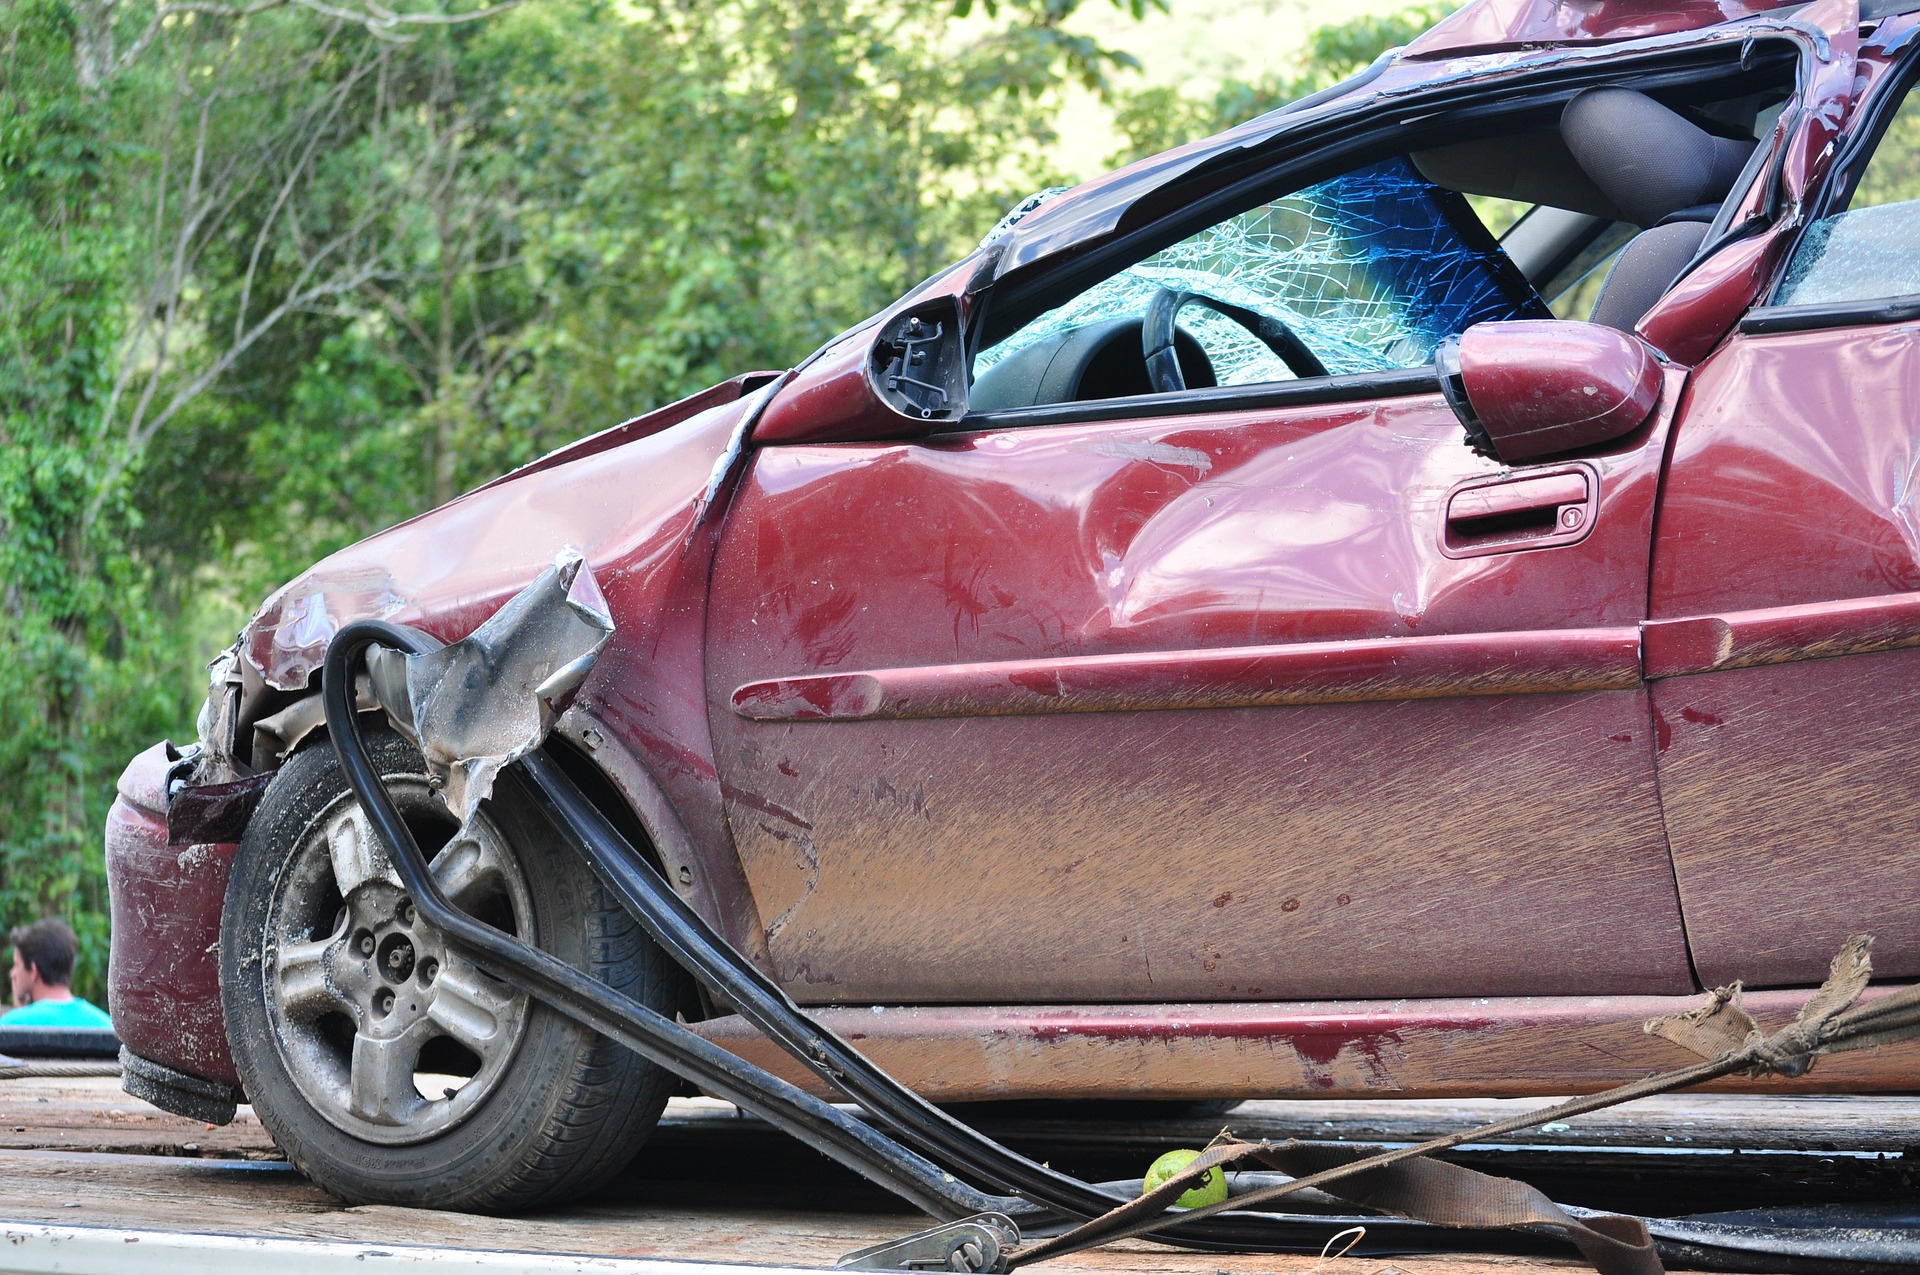 Autounfall und jetzt? So regulieren Sie den Schaden sauber